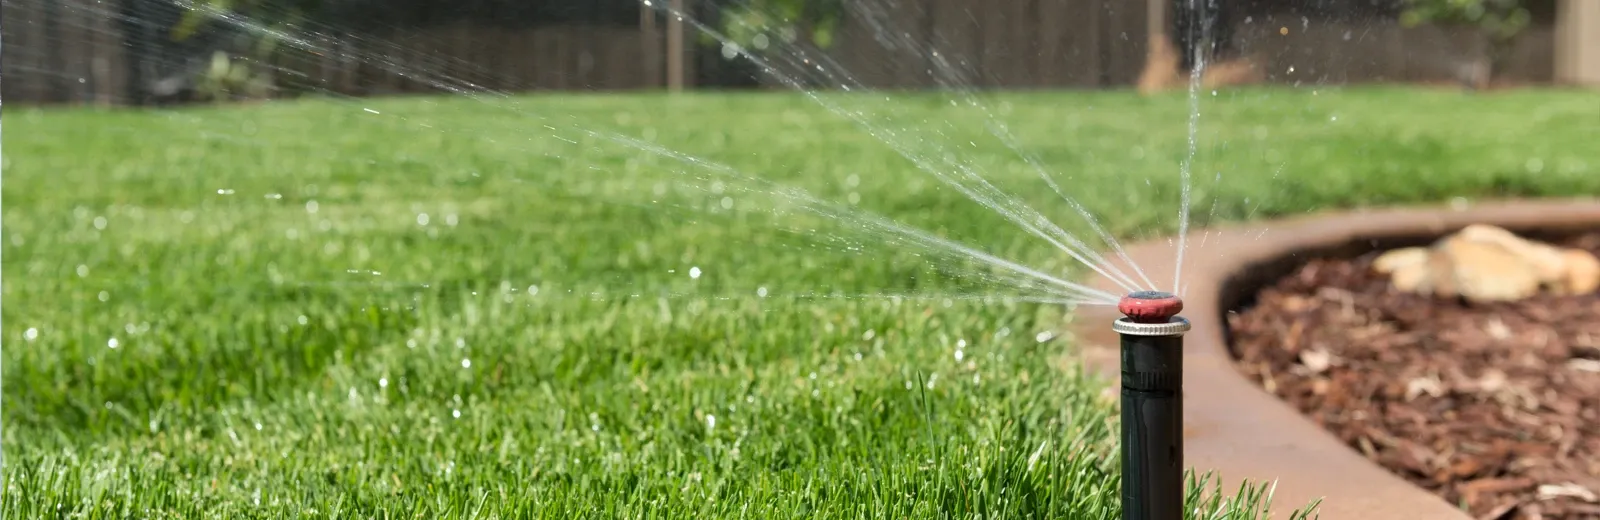 irrigation - sprinkler repair